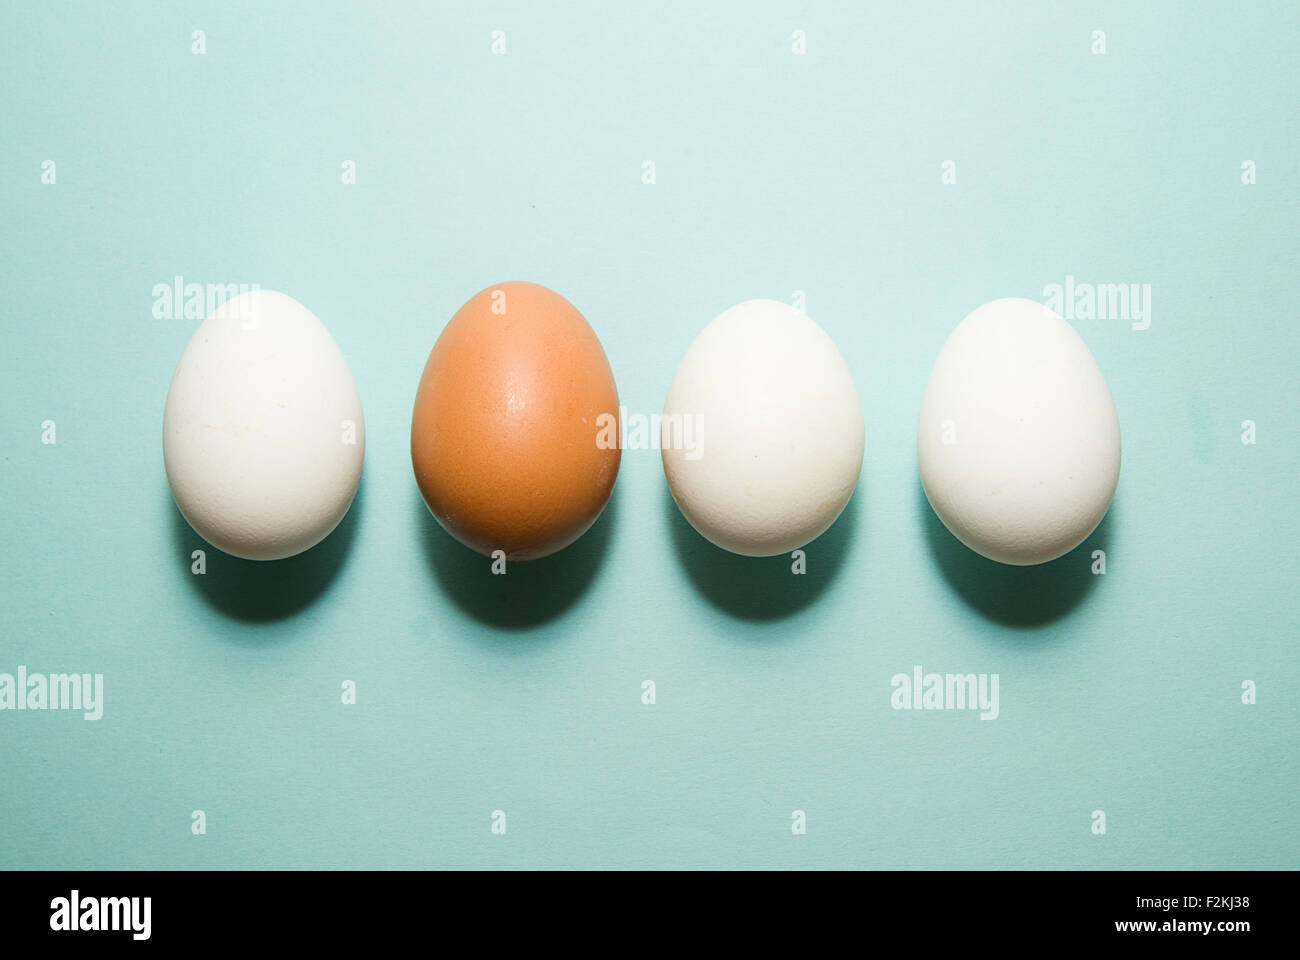 Uova di gallina di diversi colori su sfondo blu Foto Stock